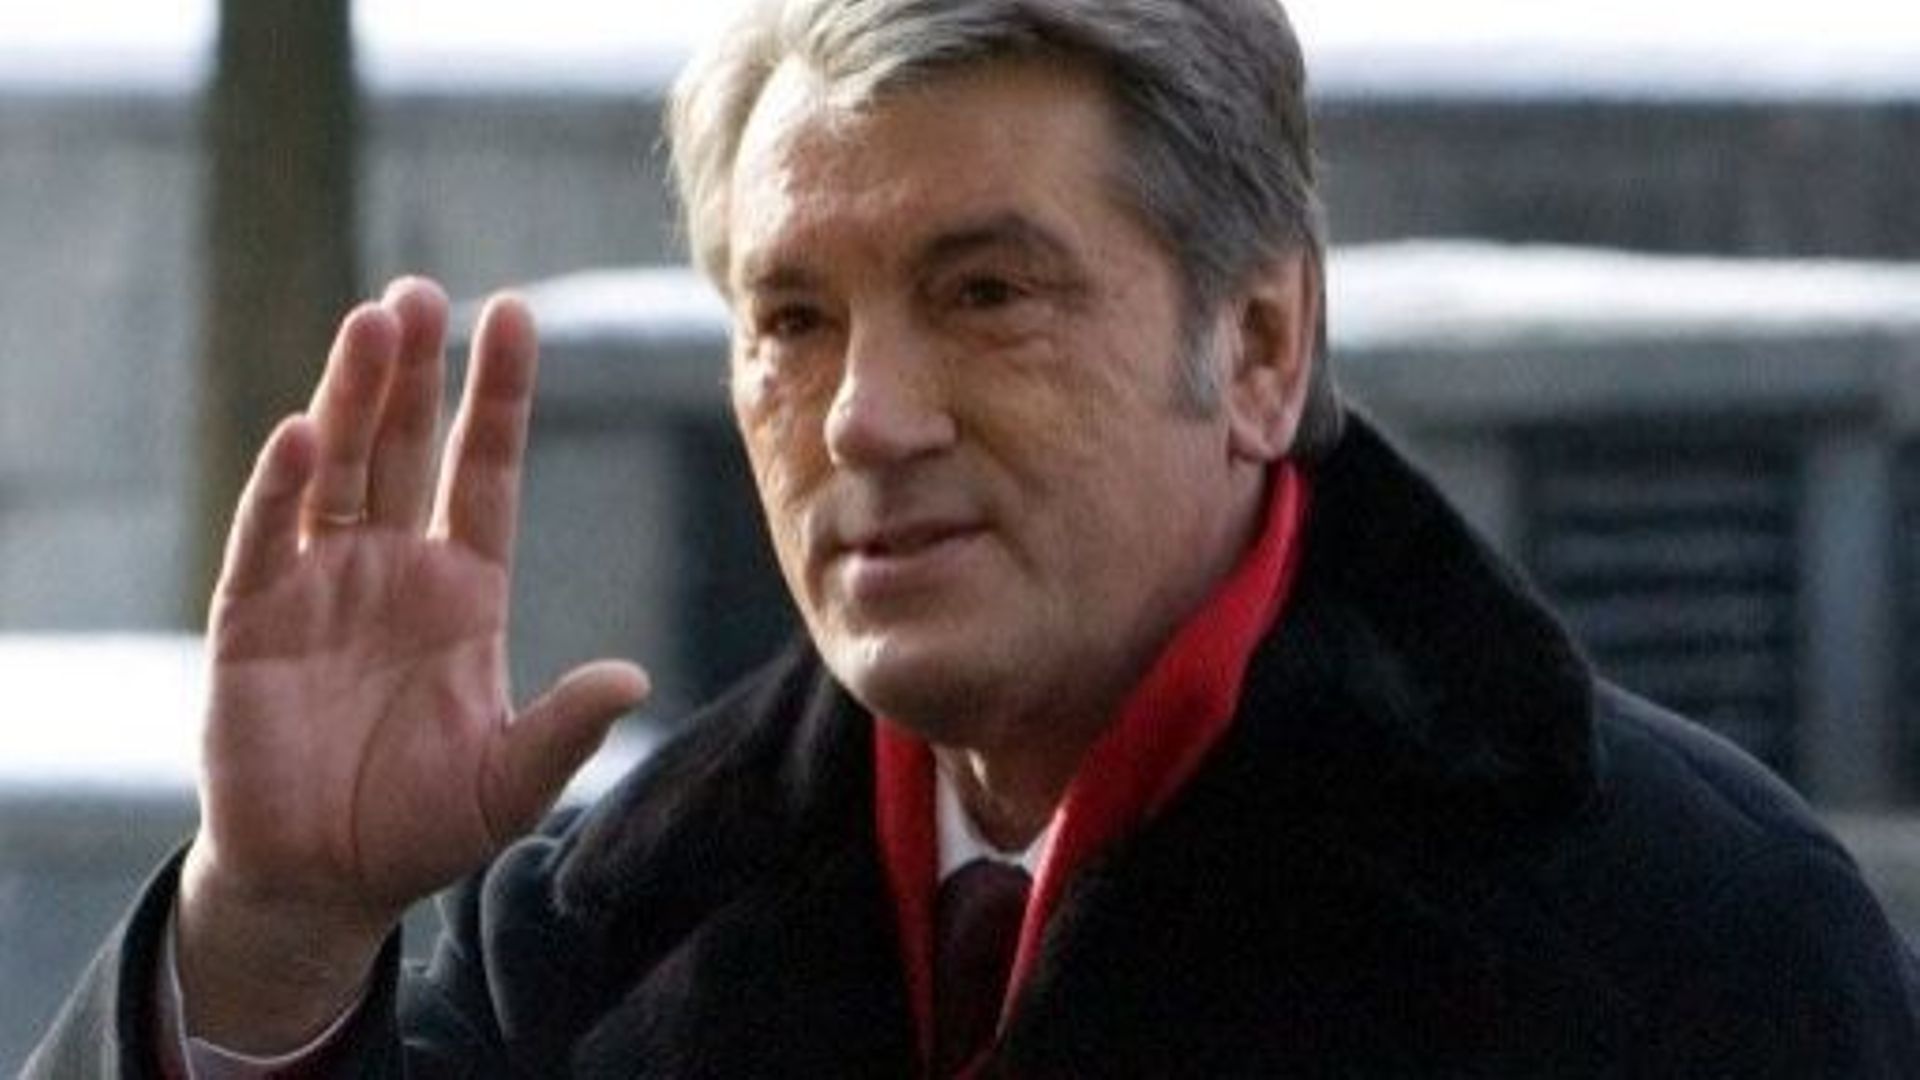 Procès Timochenko: l'ex-président Iouchtchenko au tribunal comme témoin